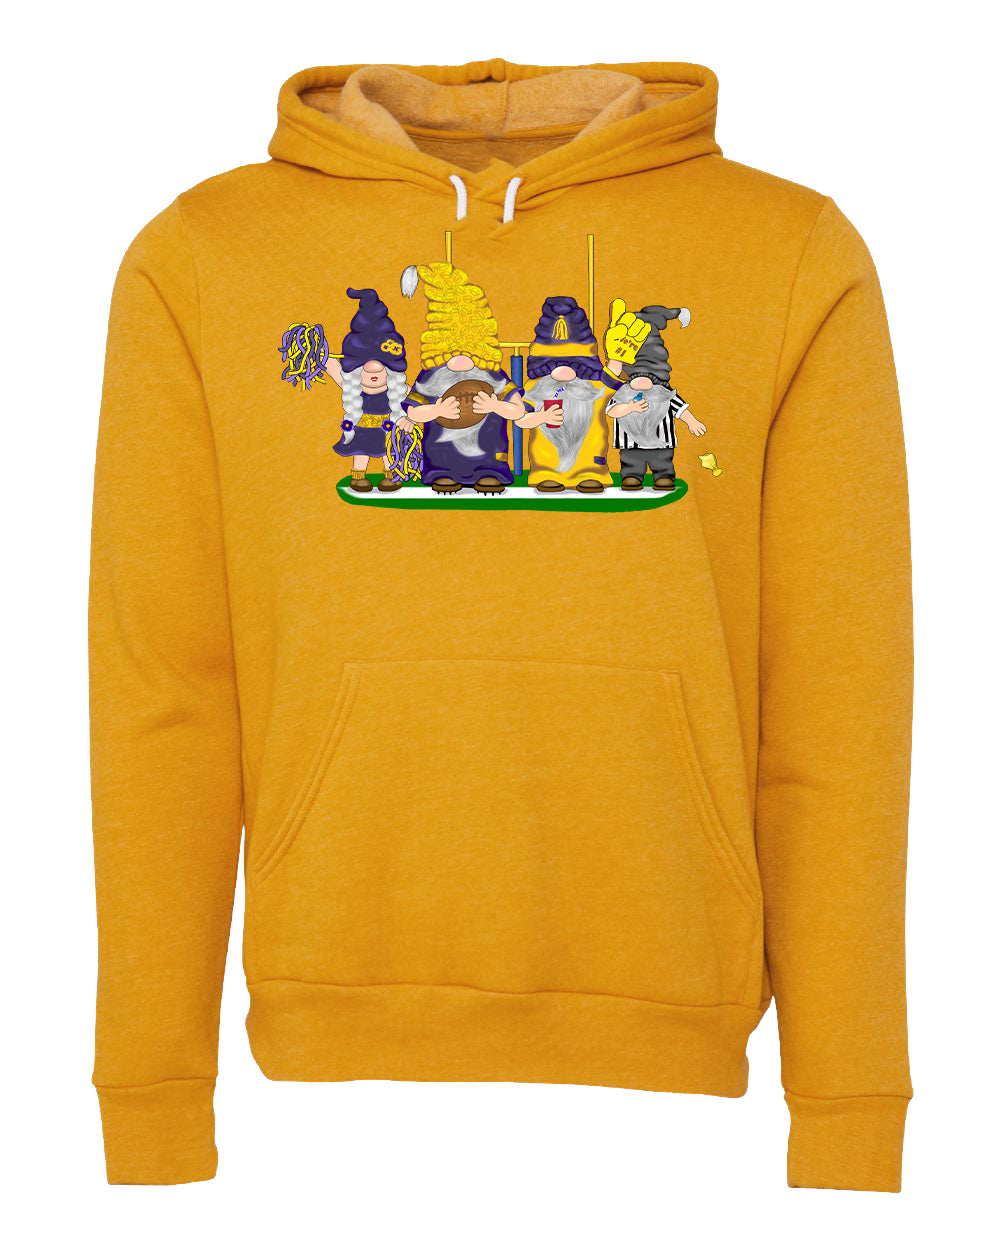 Purple & Gold Football Gnomes (similar to Minnesota) on Unisex Hoodie